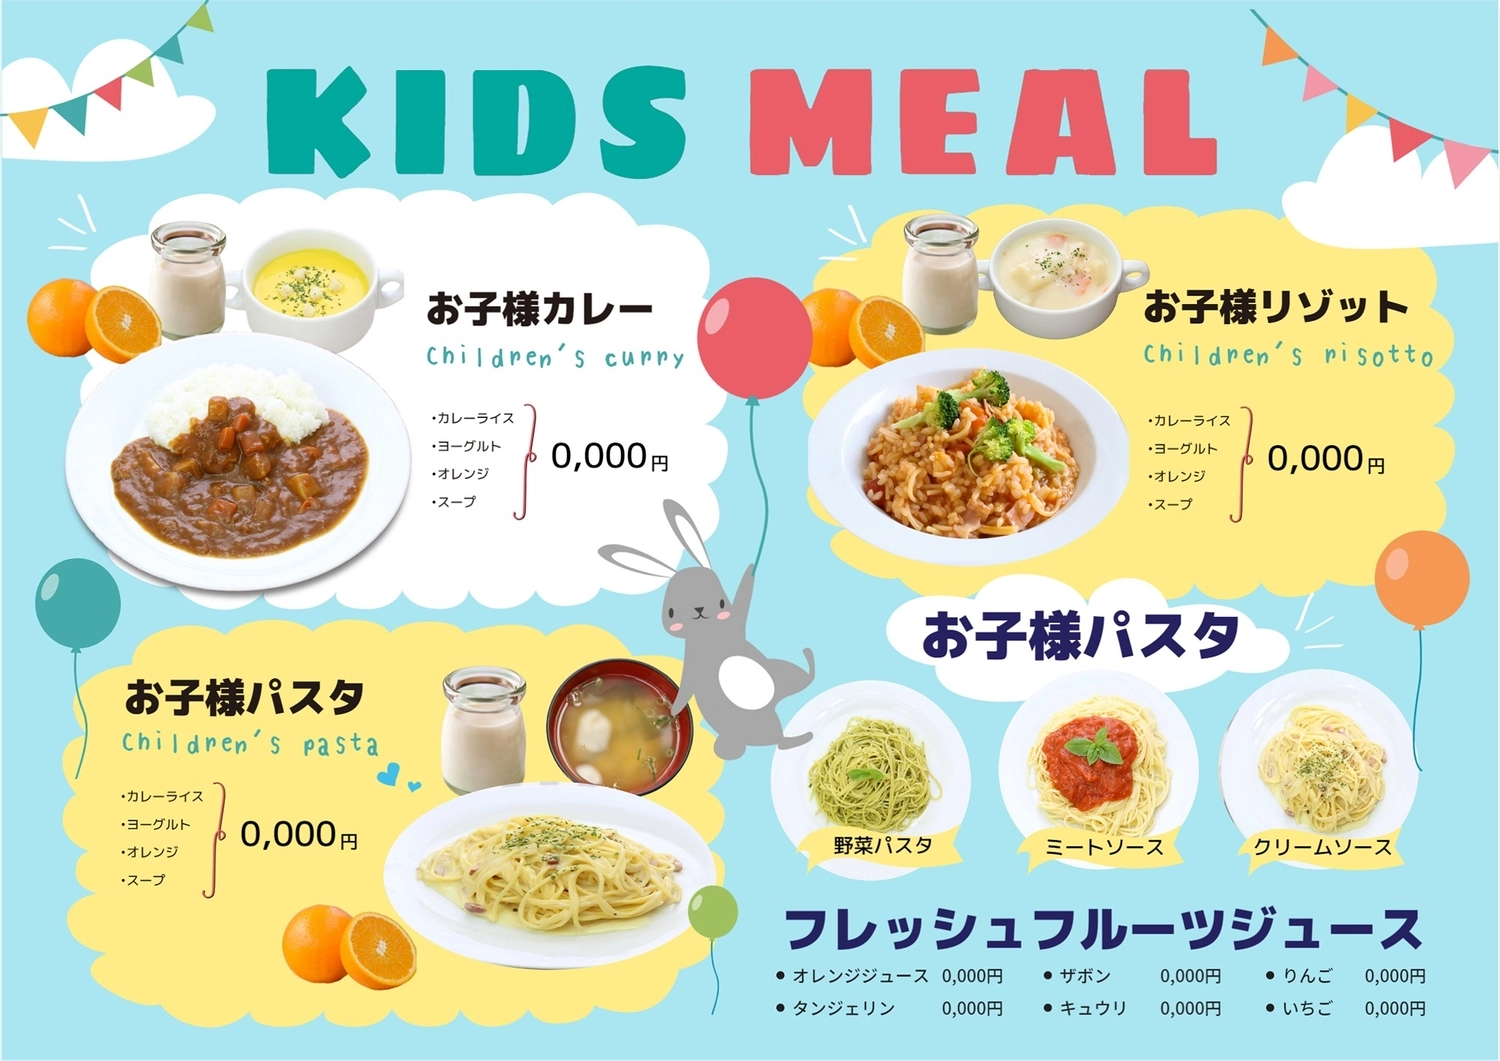 キッズメニューテンプレート, risotto của đứa trẻ, bữa ăn, Sản phẩm, Thực đơn mẫu